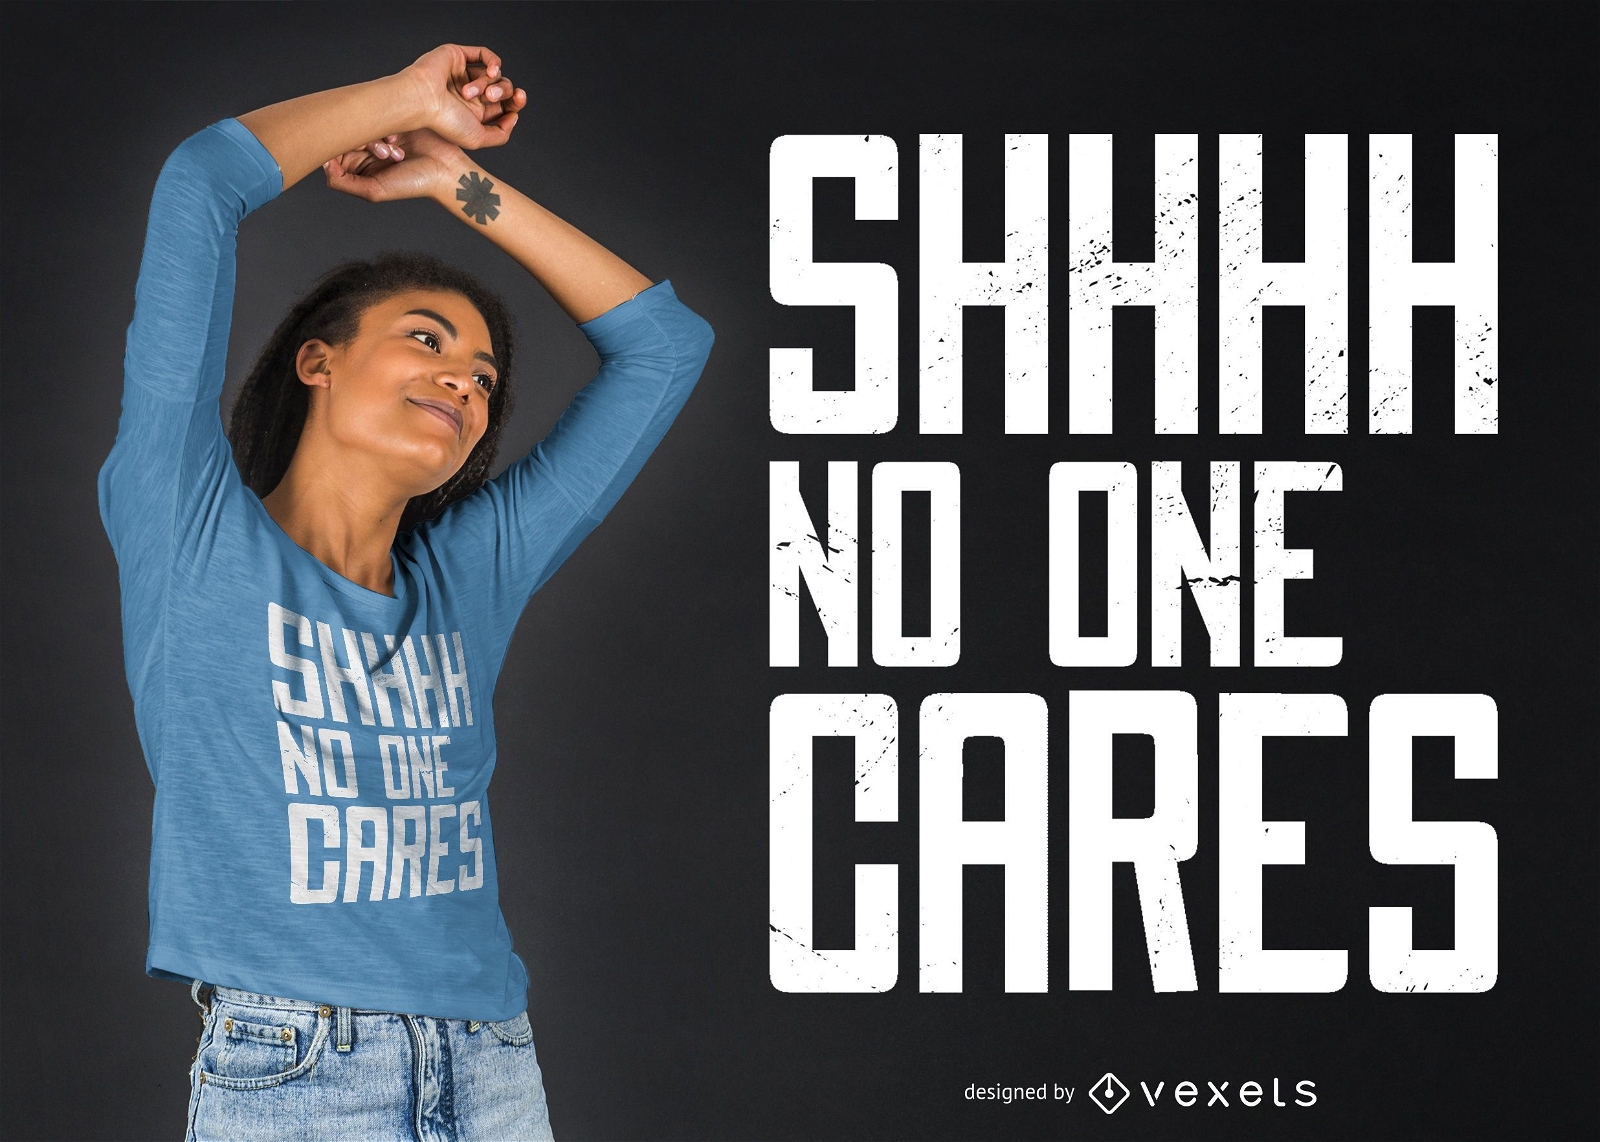 No one cares T-shirt Design